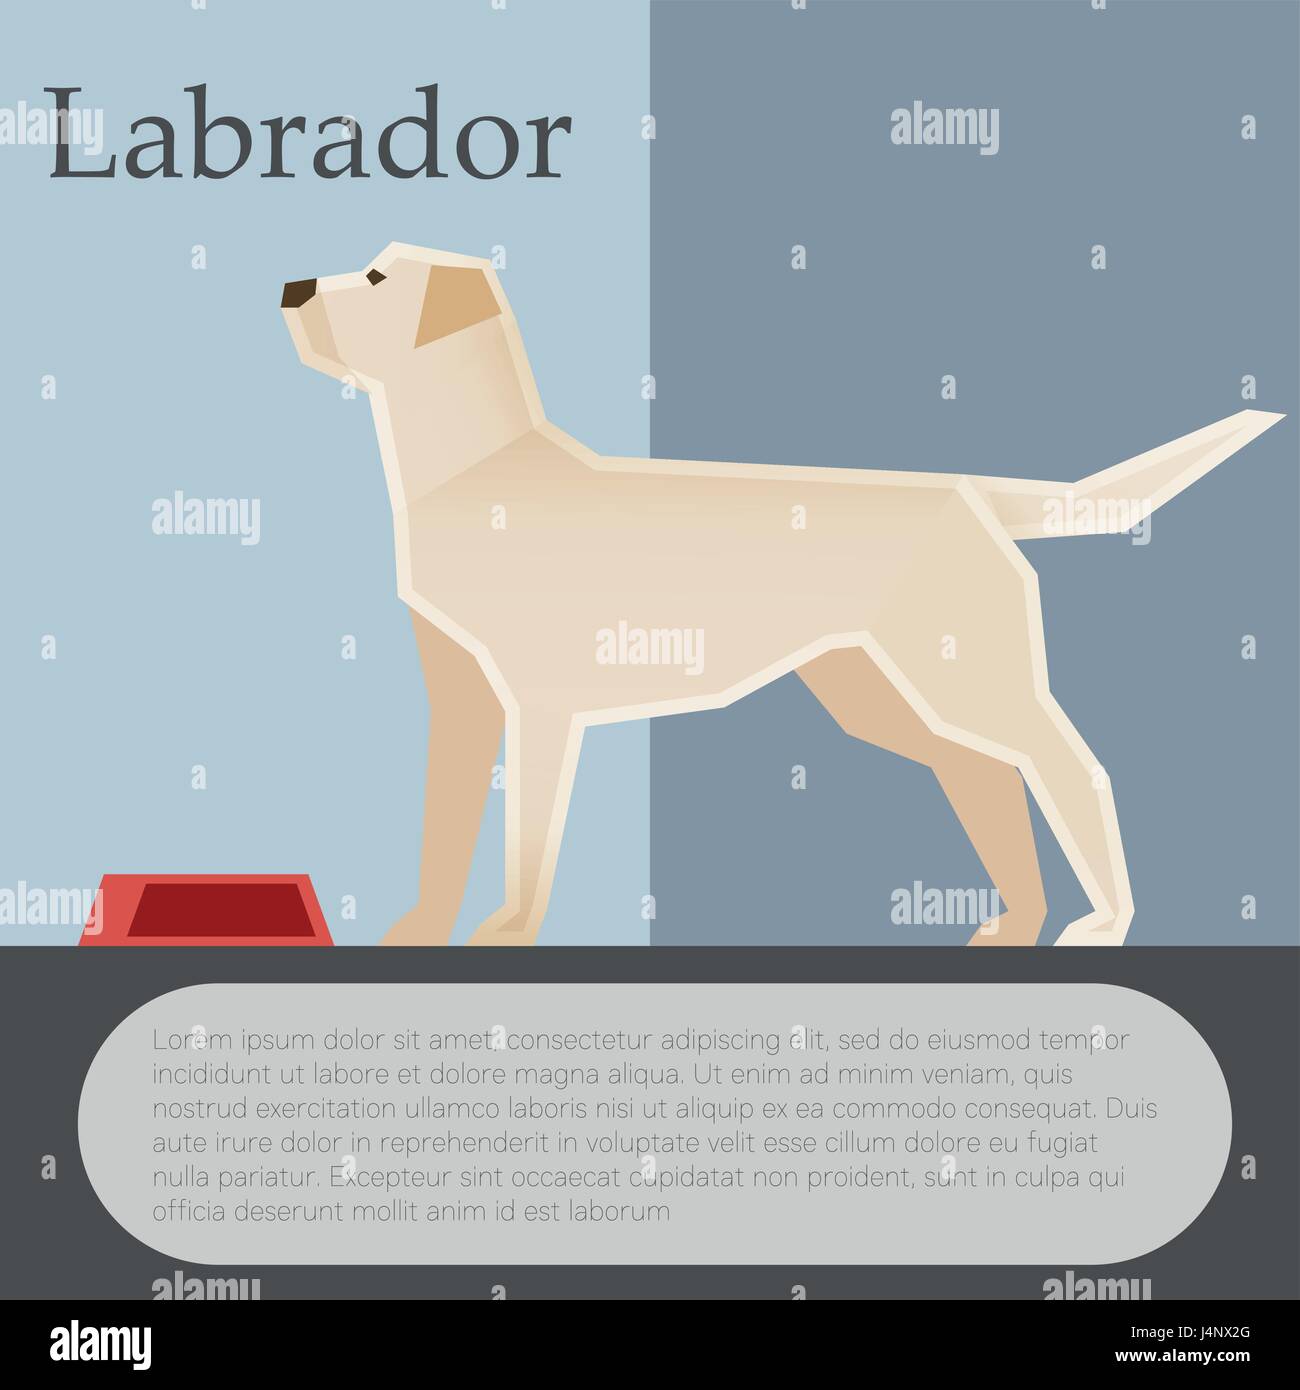 Labrador colourful postcard Stock Vector